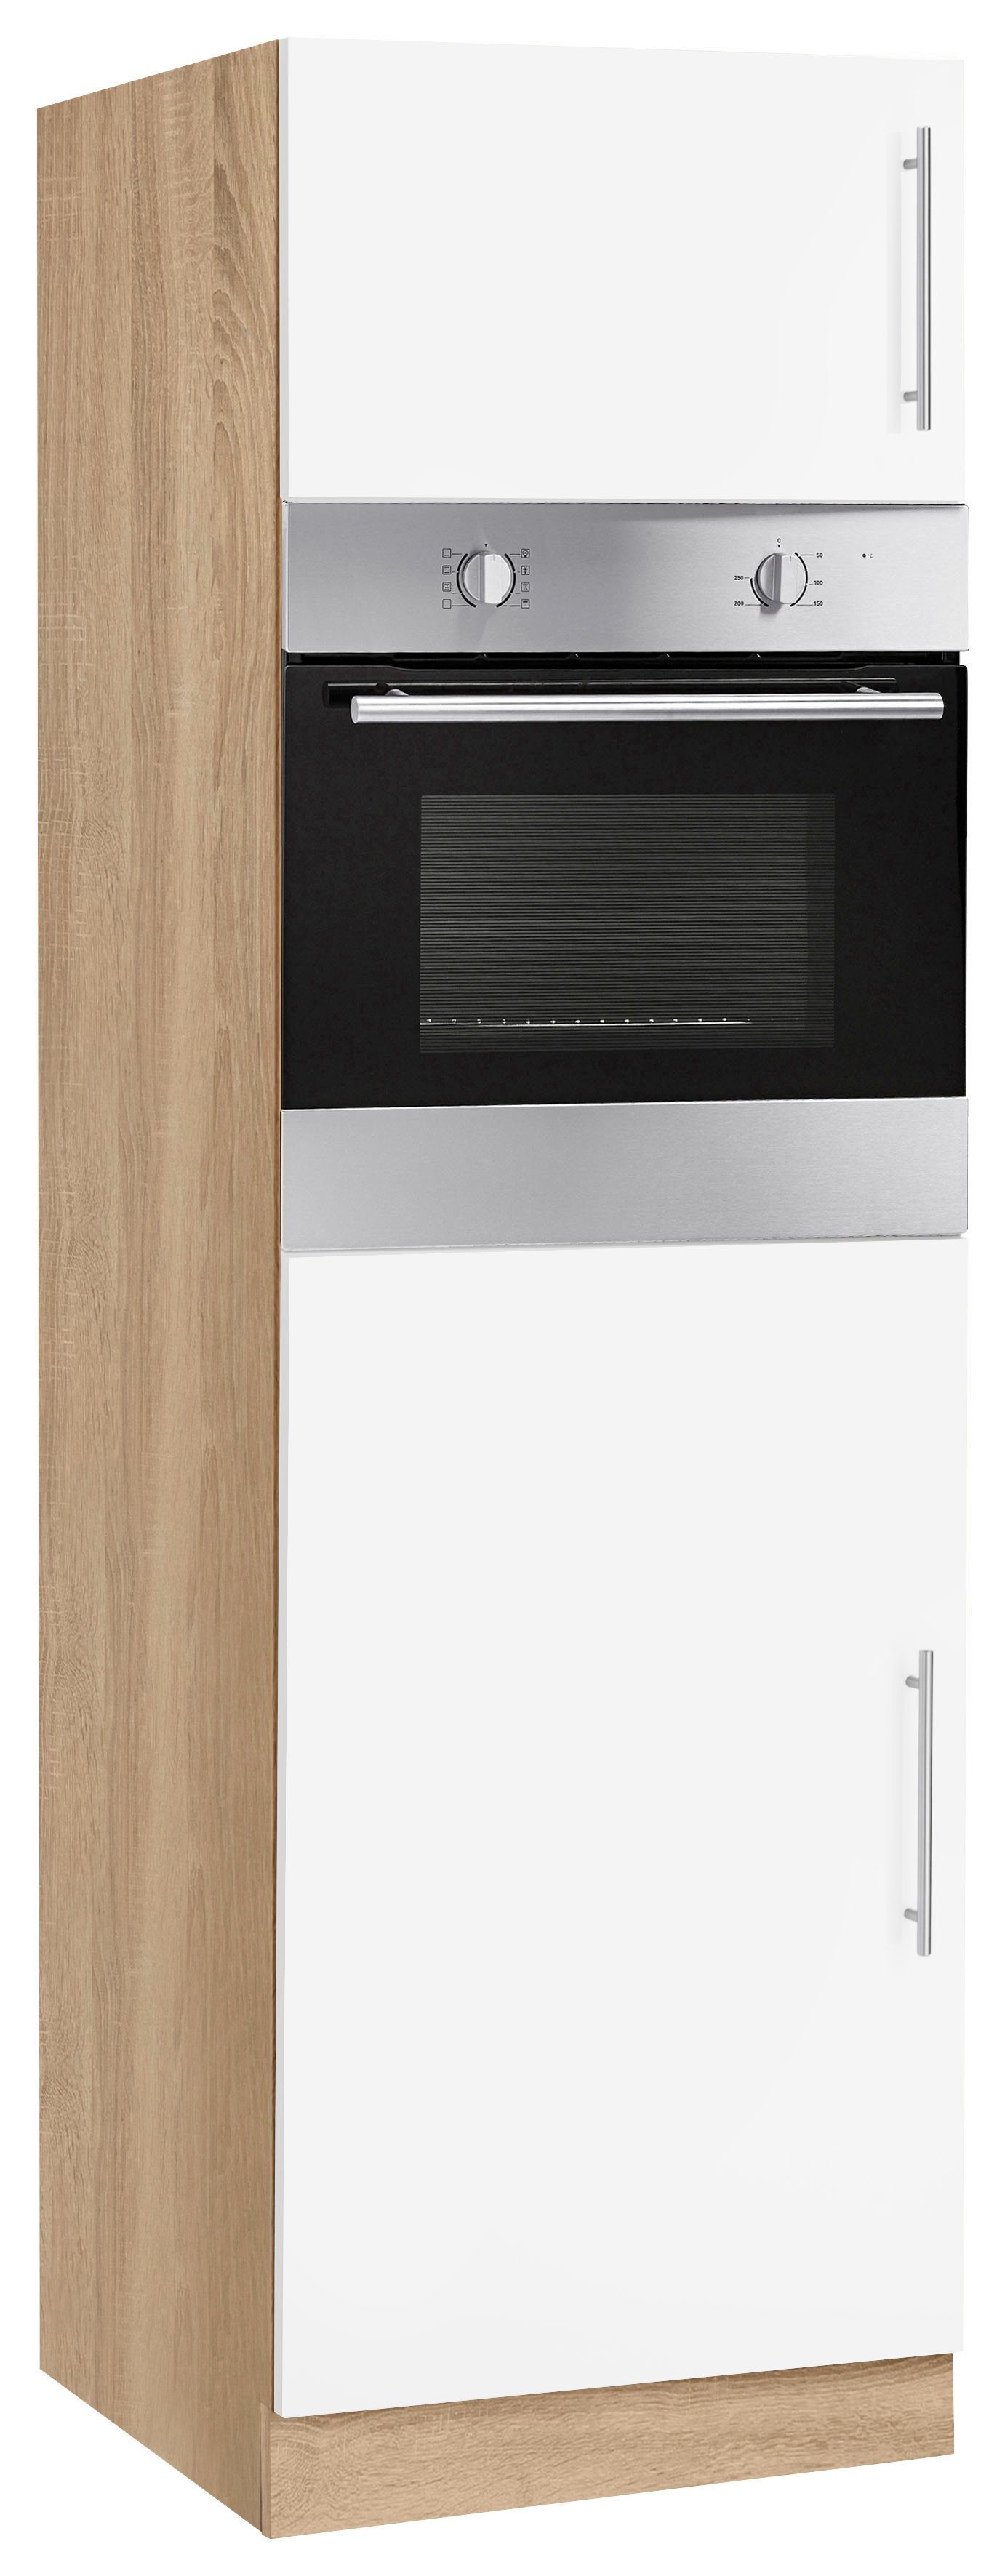 wiho Küchen Backofen/Kühlumbauschrank Cali 60 cm breit Front: Weiß matt, Korpus: Sonoma eichefarben | Eichefarben